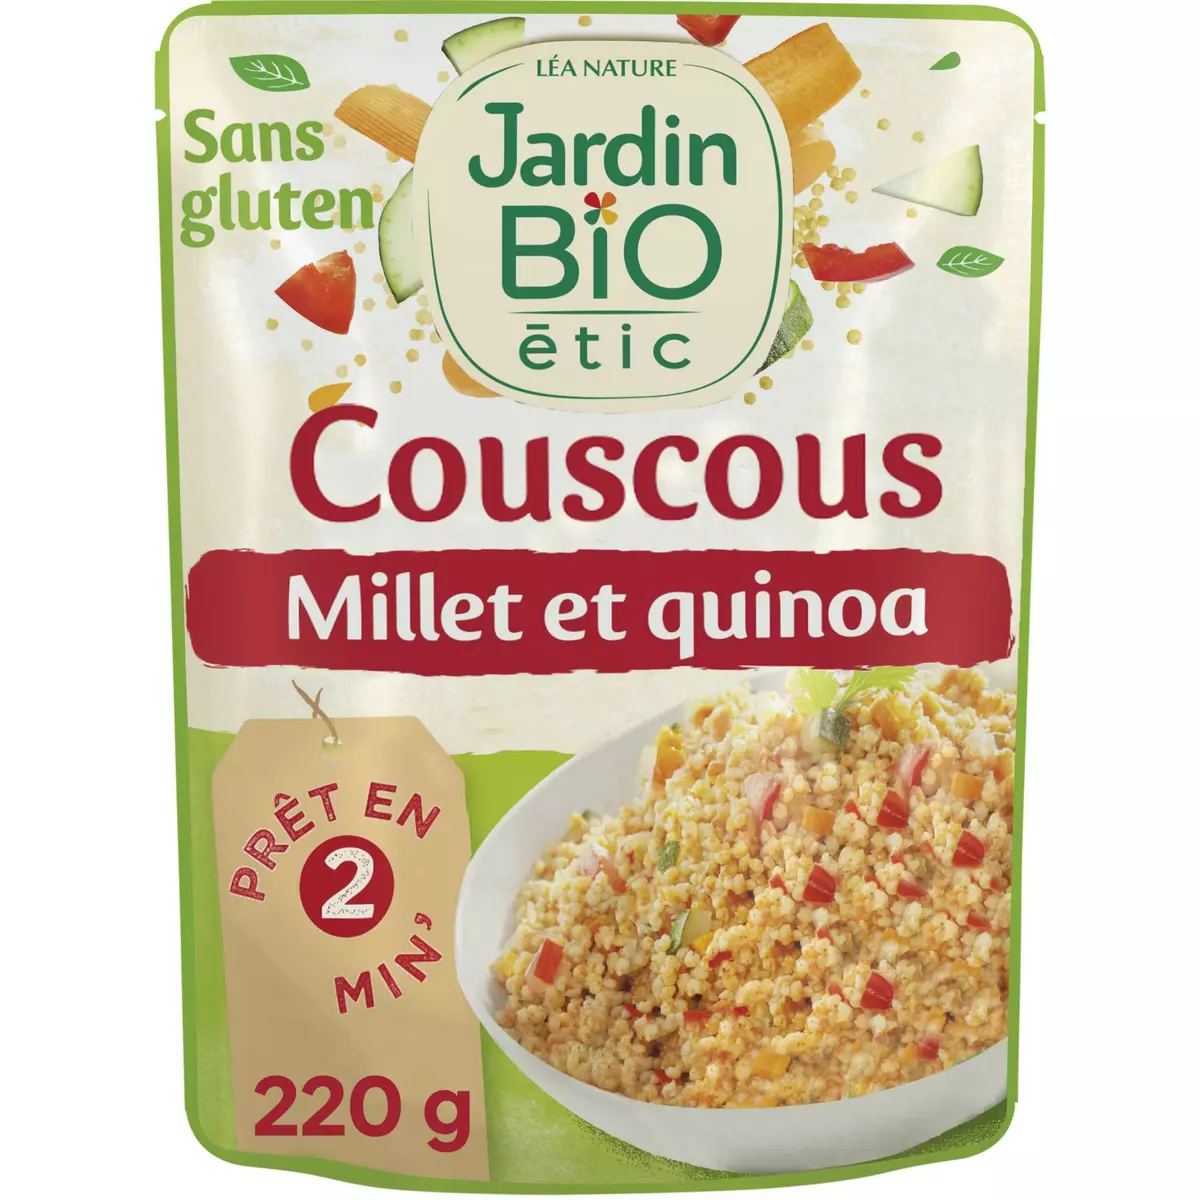 JARDIN BIO ETIC Couscous légumes millet et quinoa sans gluten cuisson rapide 220g